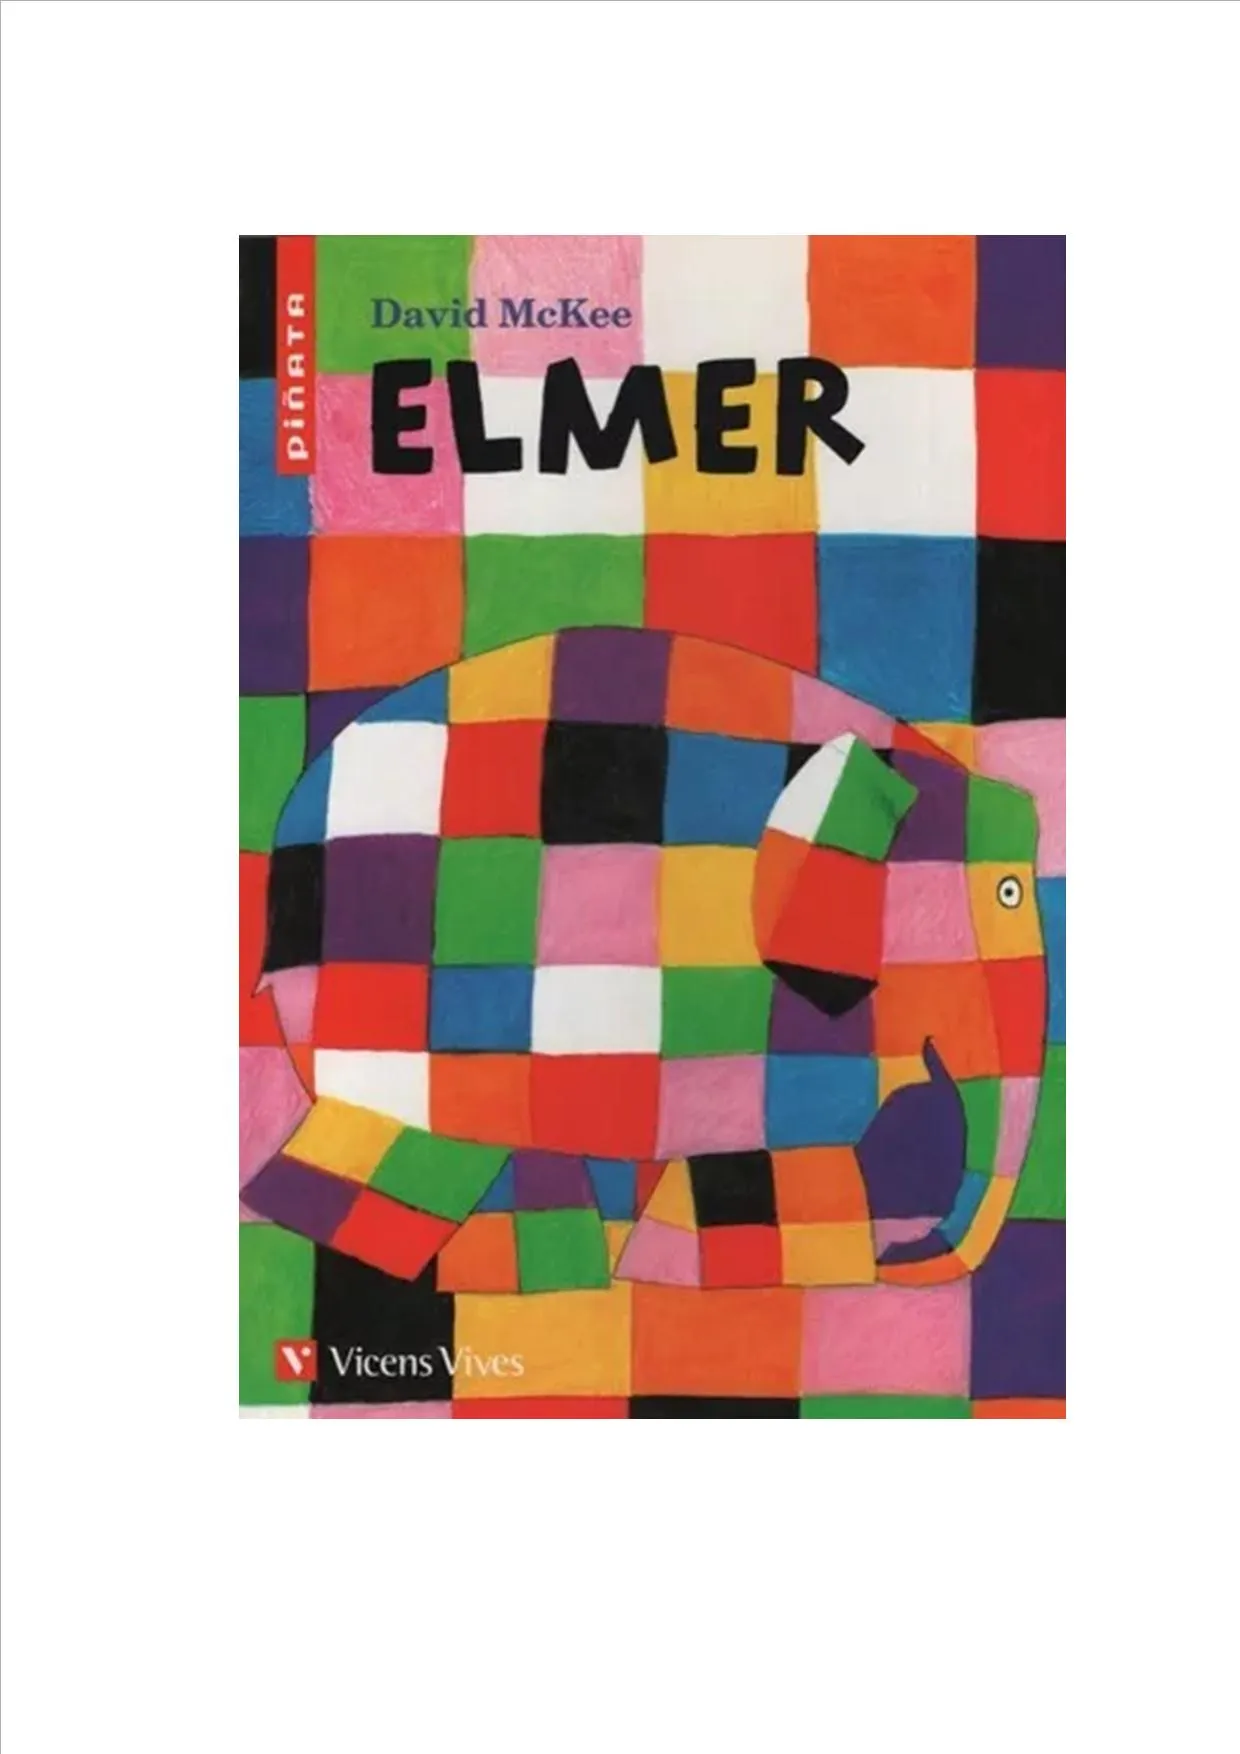 Elmer, De David Mckee., Vol. Único. Editorial Vicens Vives,